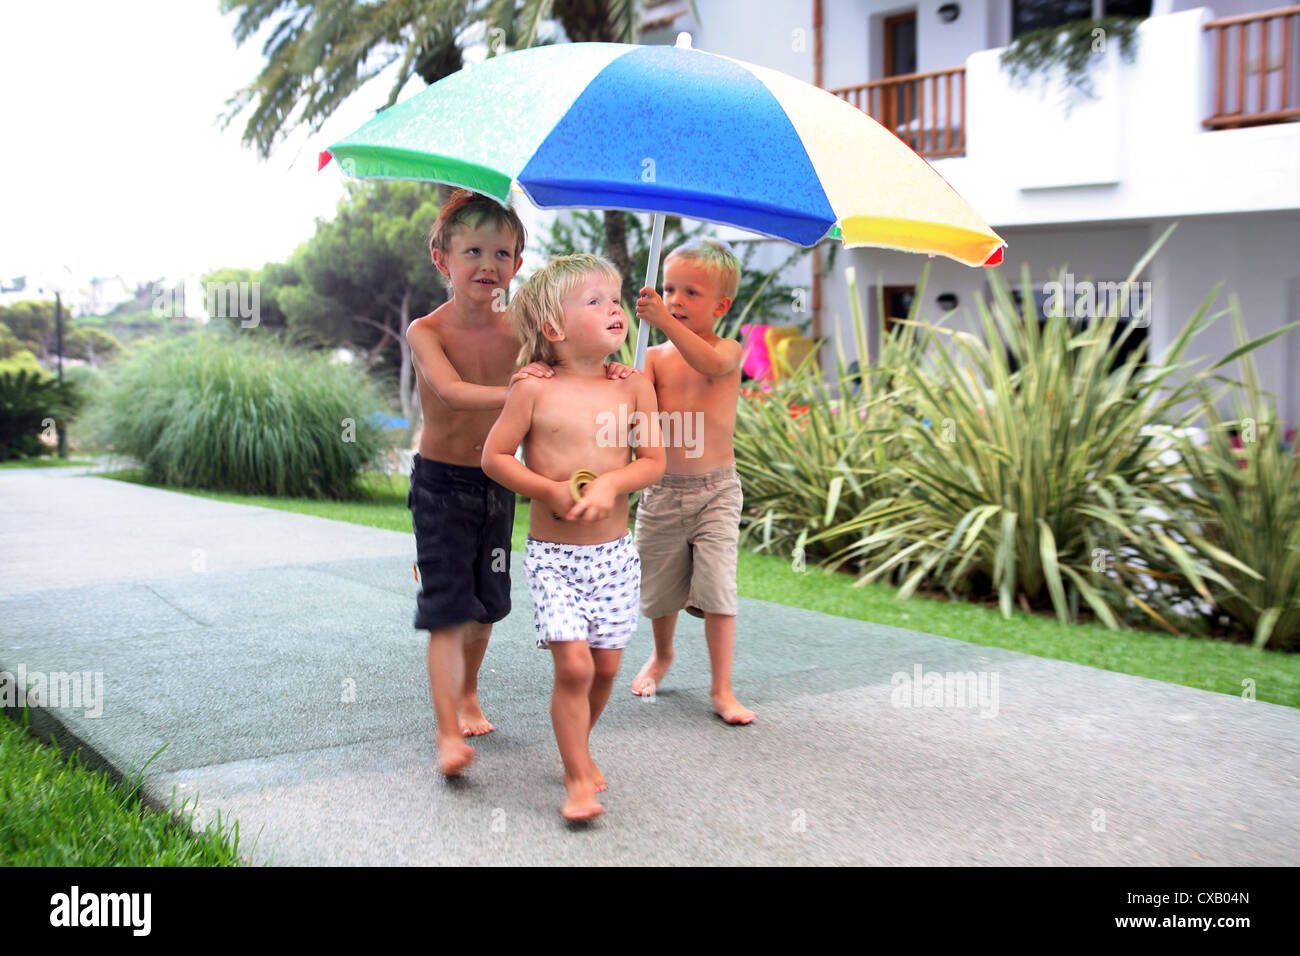 Valldemossa, les enfants courir sous la pluie sous un parapluie Photo Stock  - Alamy